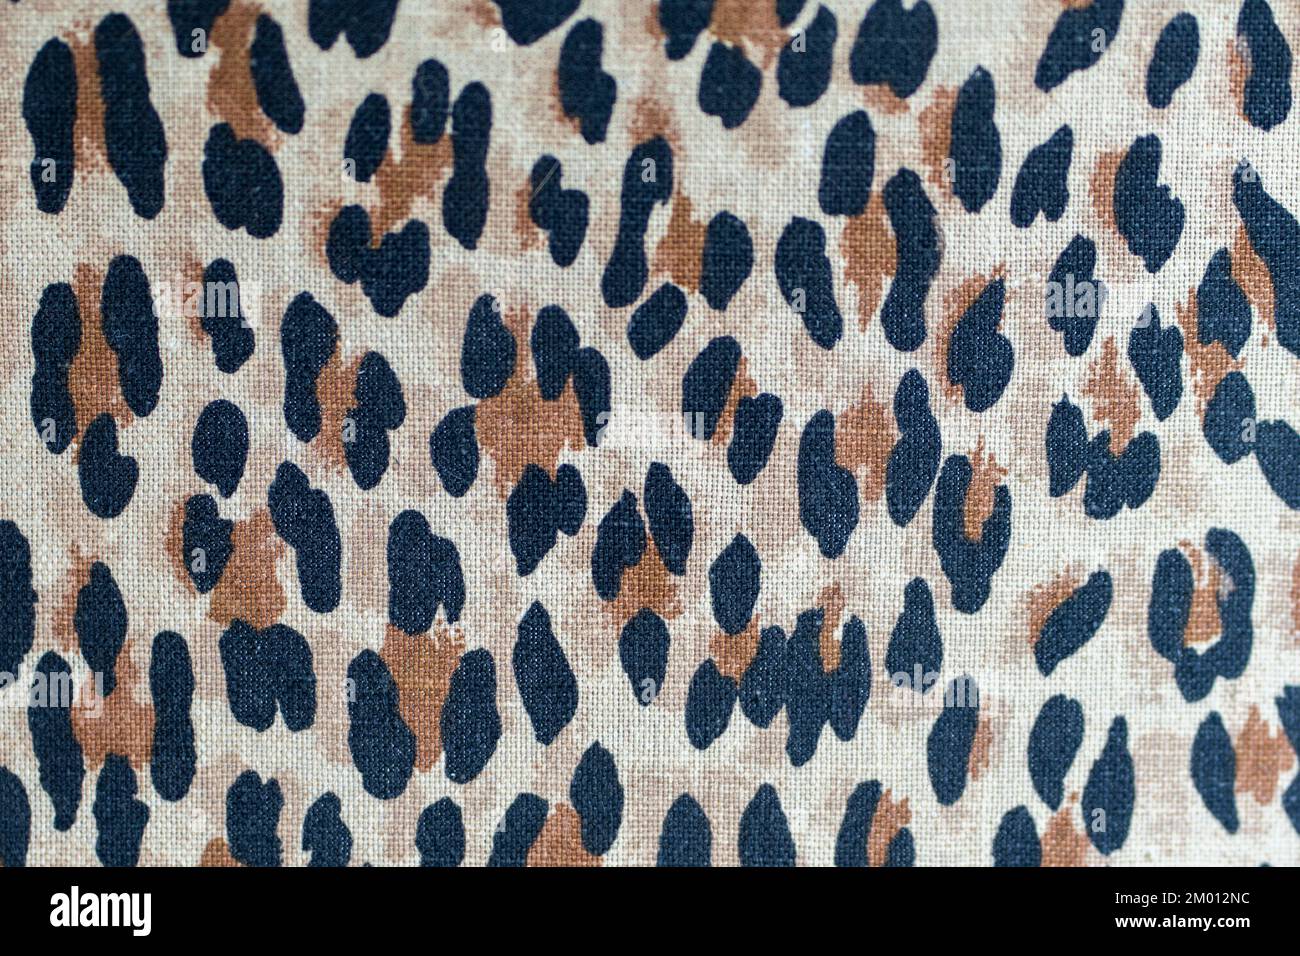 Imagen de textura textil con estampado animal. Fondo de piel de leopardo Foto de stock